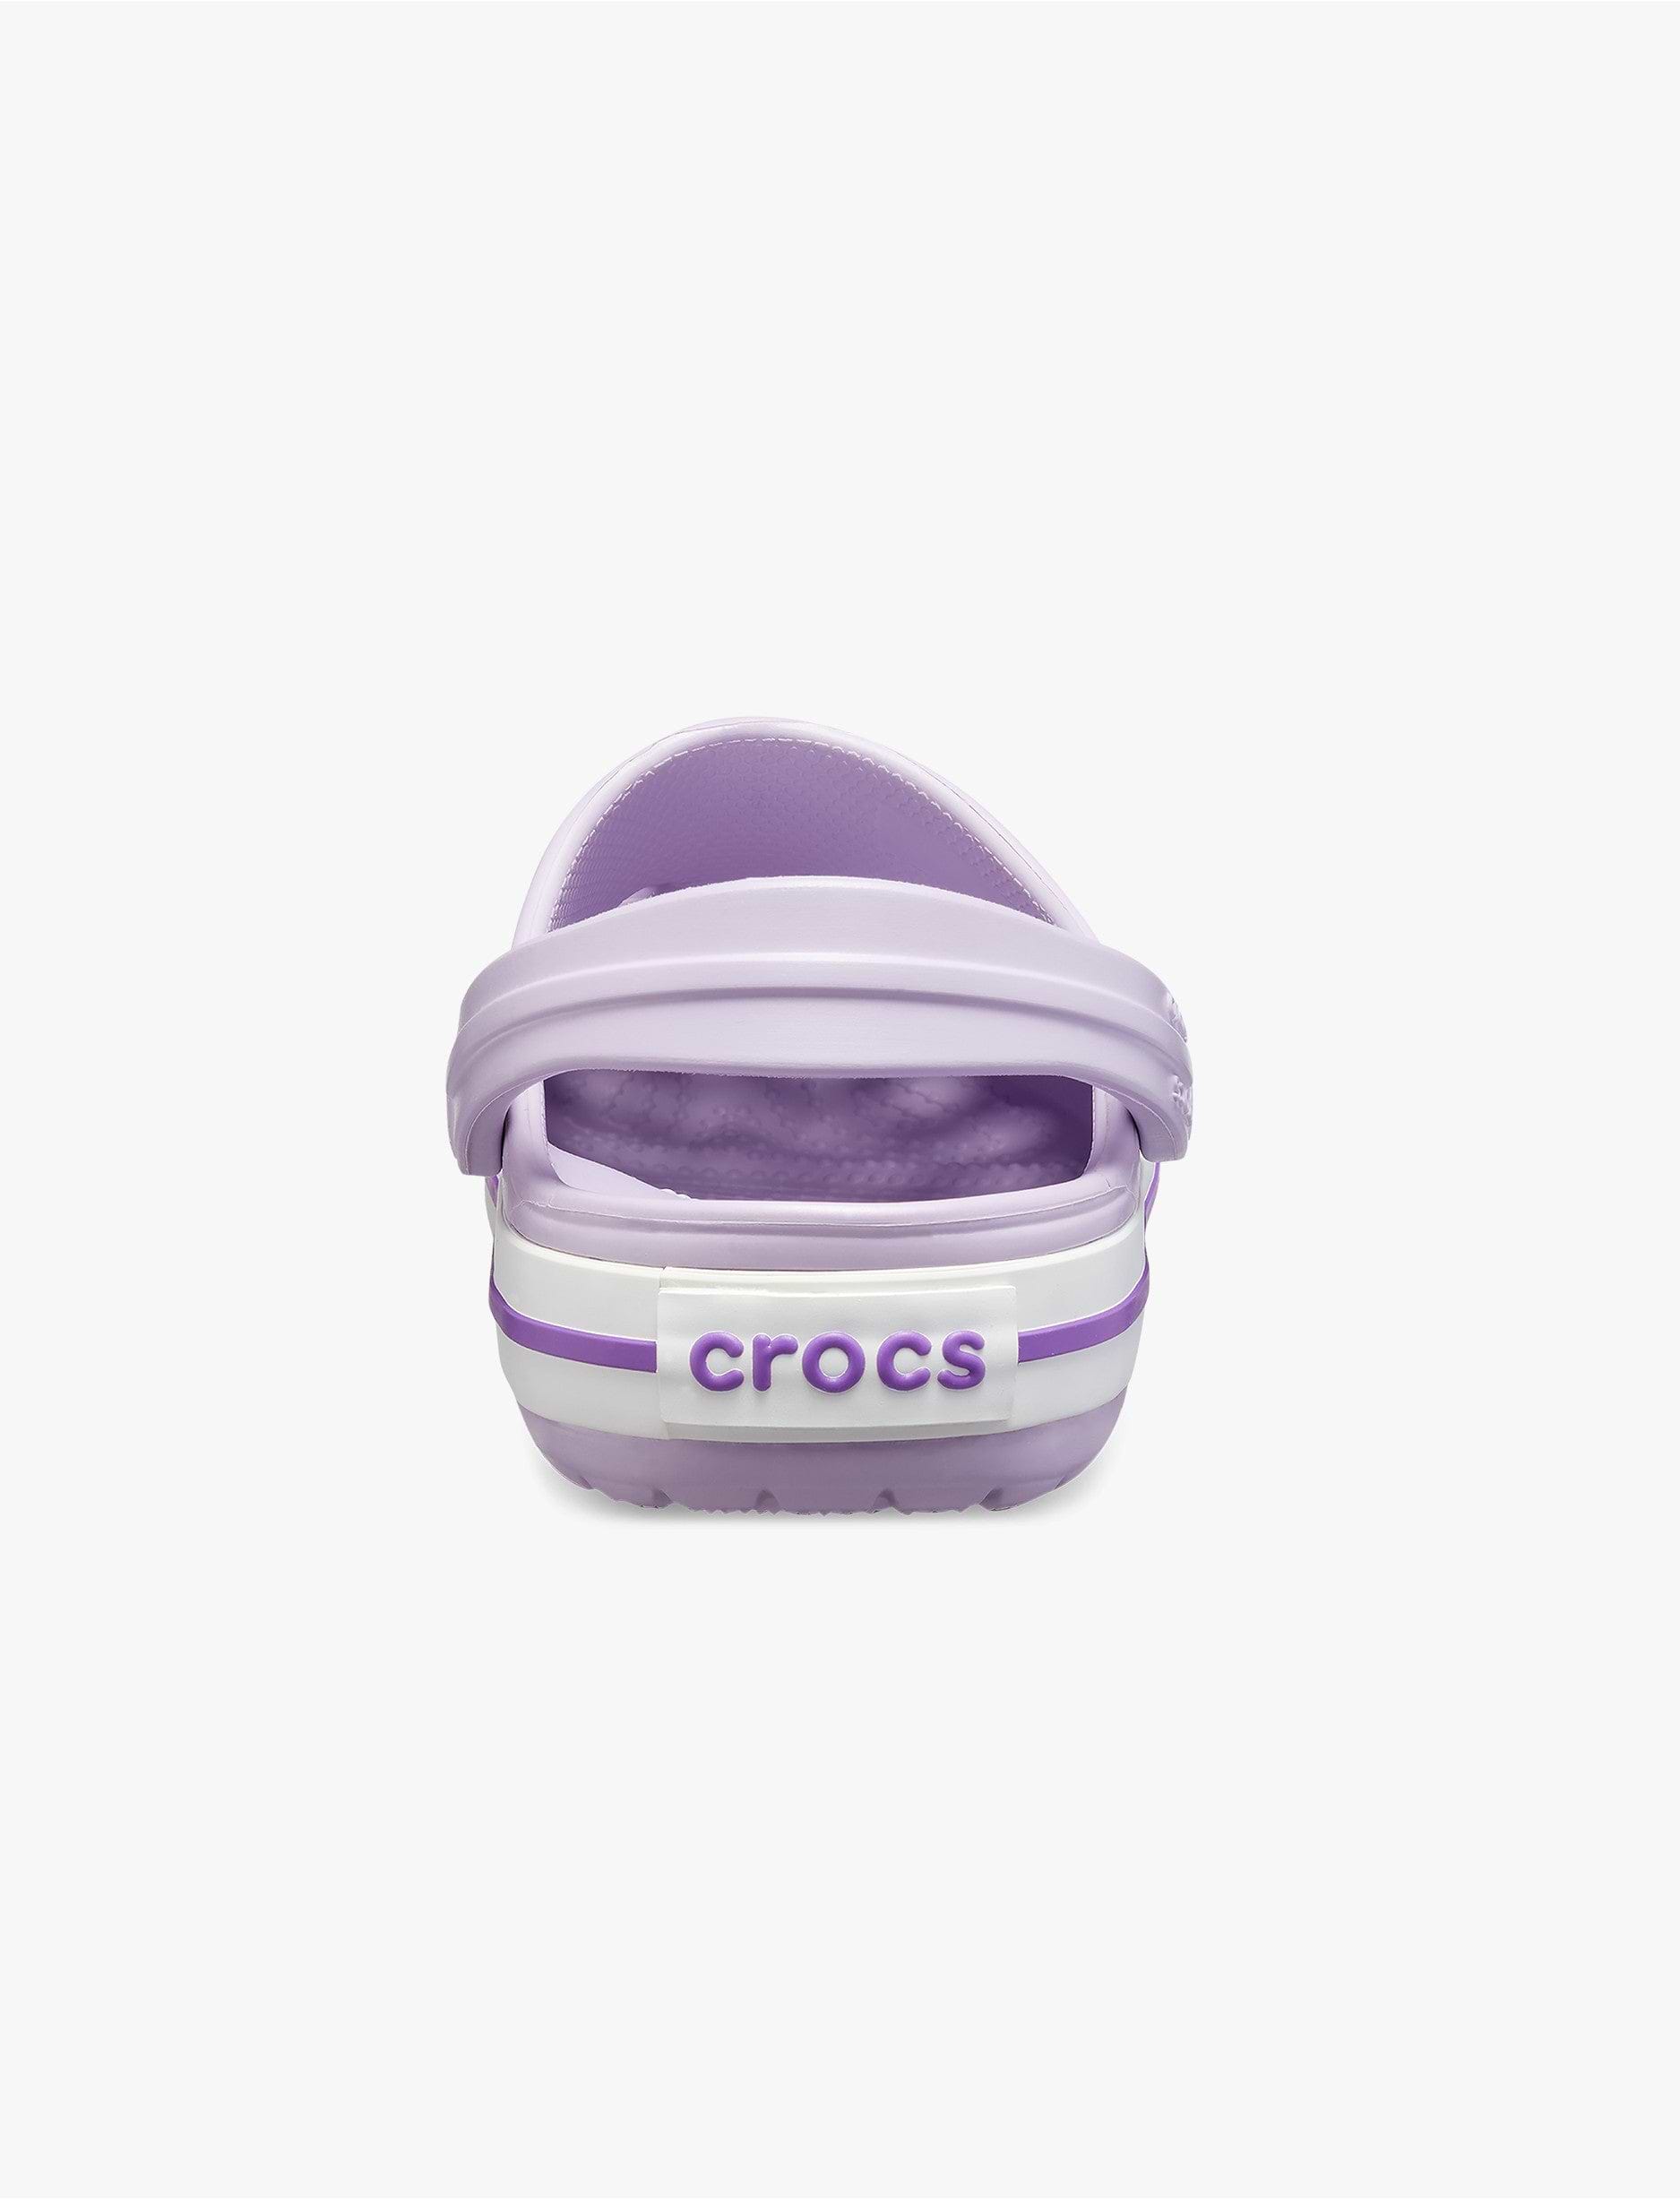 Crocs CrocBand Clog T - כפכפים לילדים קרוקס קרוקבנד בצבע לבנדר/סגול נאון מידות קטנות